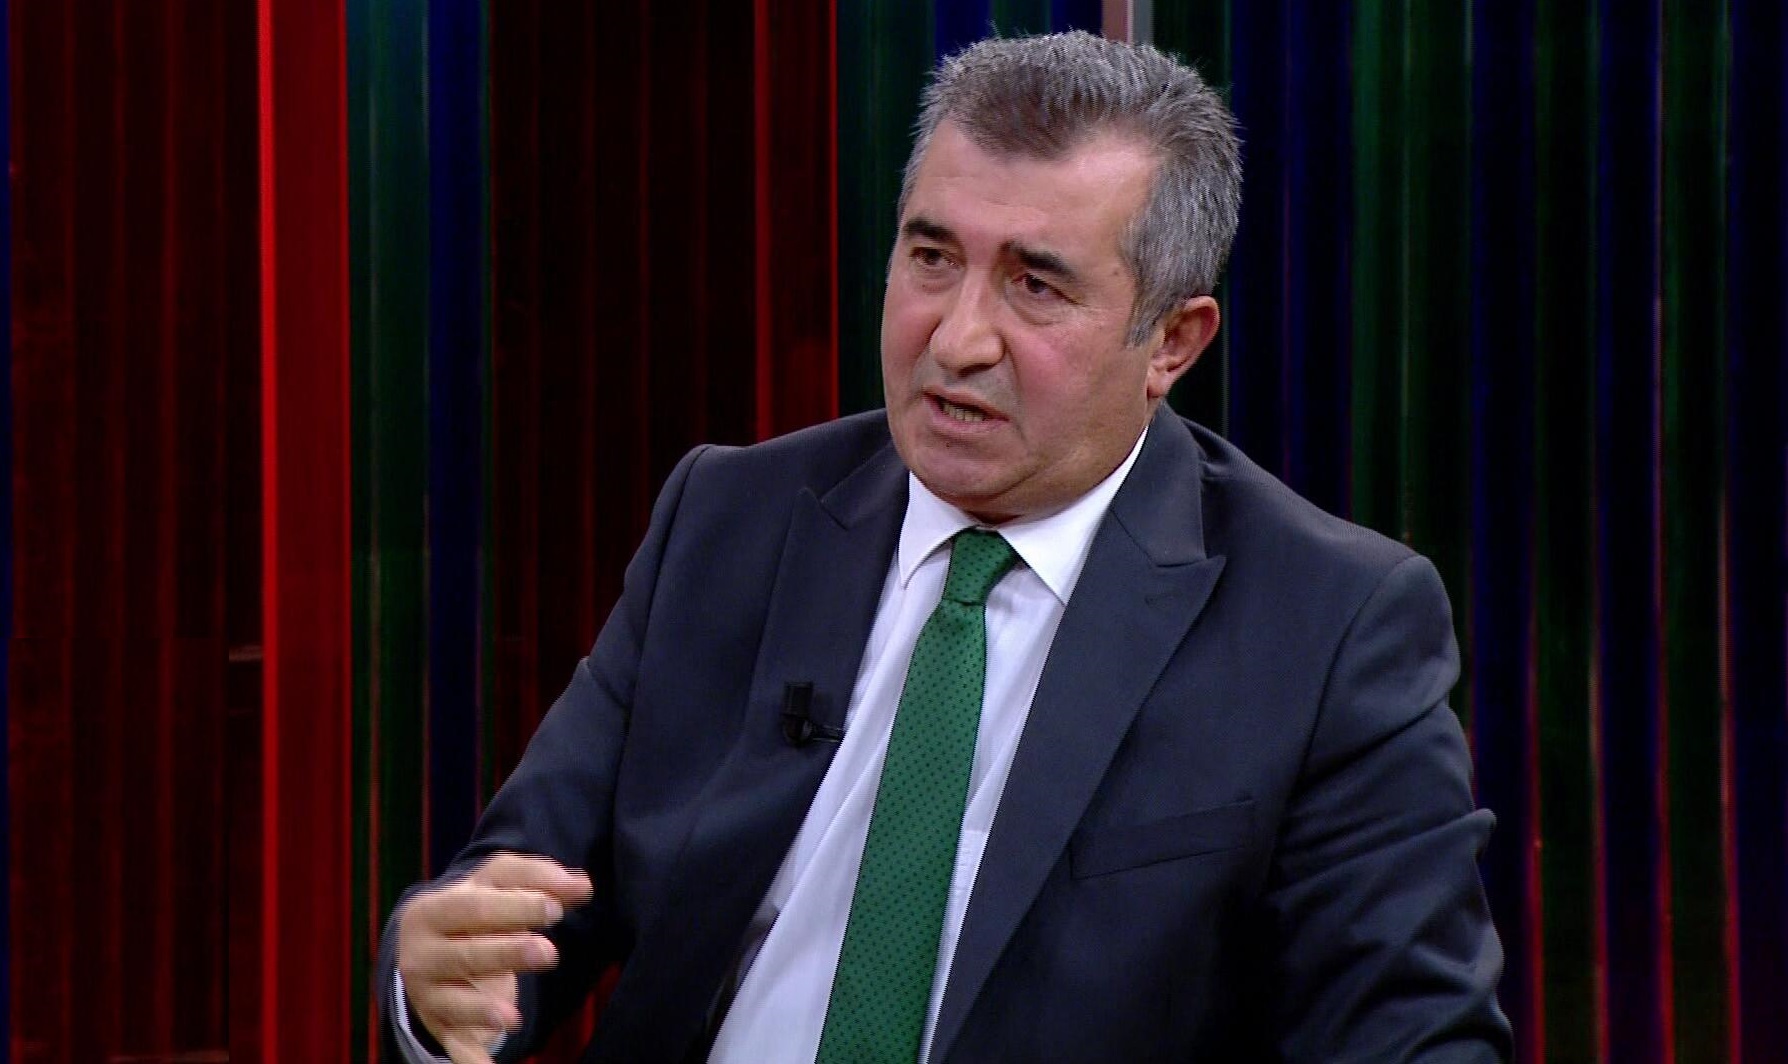 Турецкий журналист в эфире телеканала «Halk TV» заговорил о Геноциде армян и раскритиковал власти страны